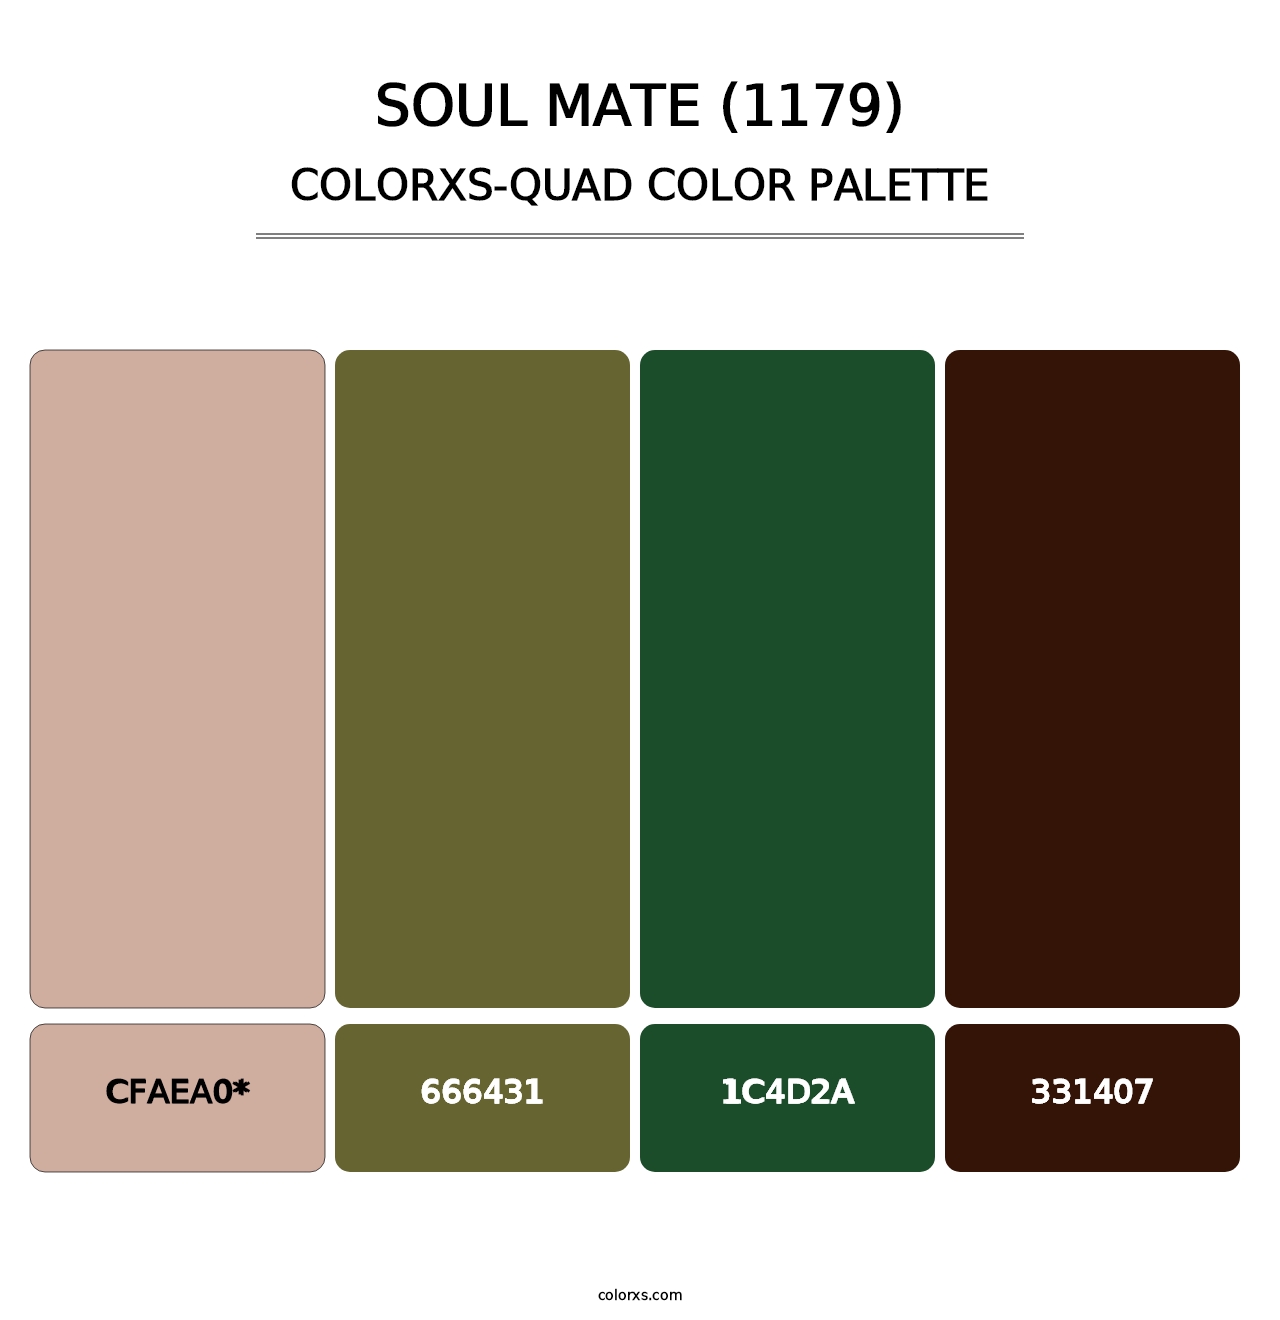 Soul Mate (1179) - Colorxs Quad Palette